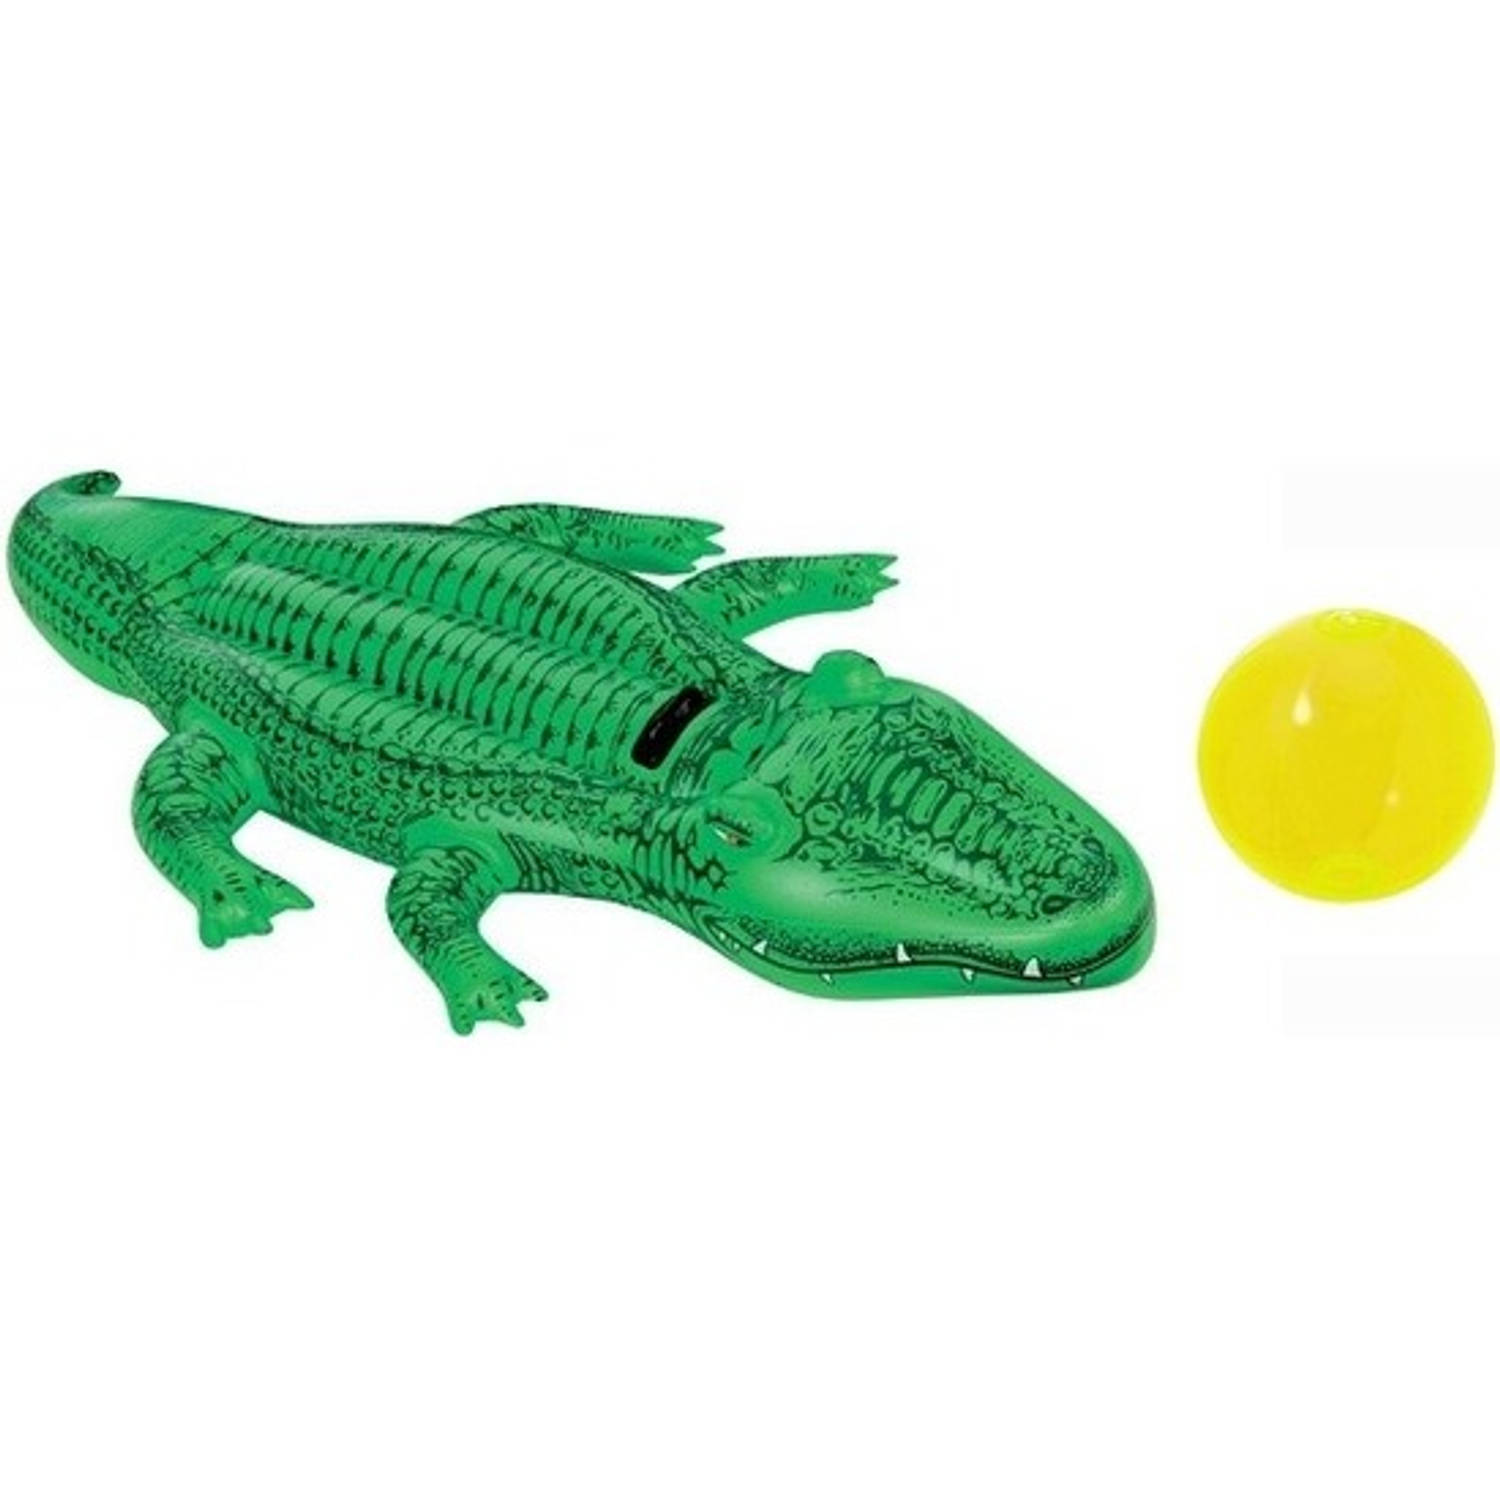 Intex Opblaasbare Krokodil 175 Cm Met Gratis Strandbal Buitenspeelgoed Waterspeelgoed Opblaasdieren 